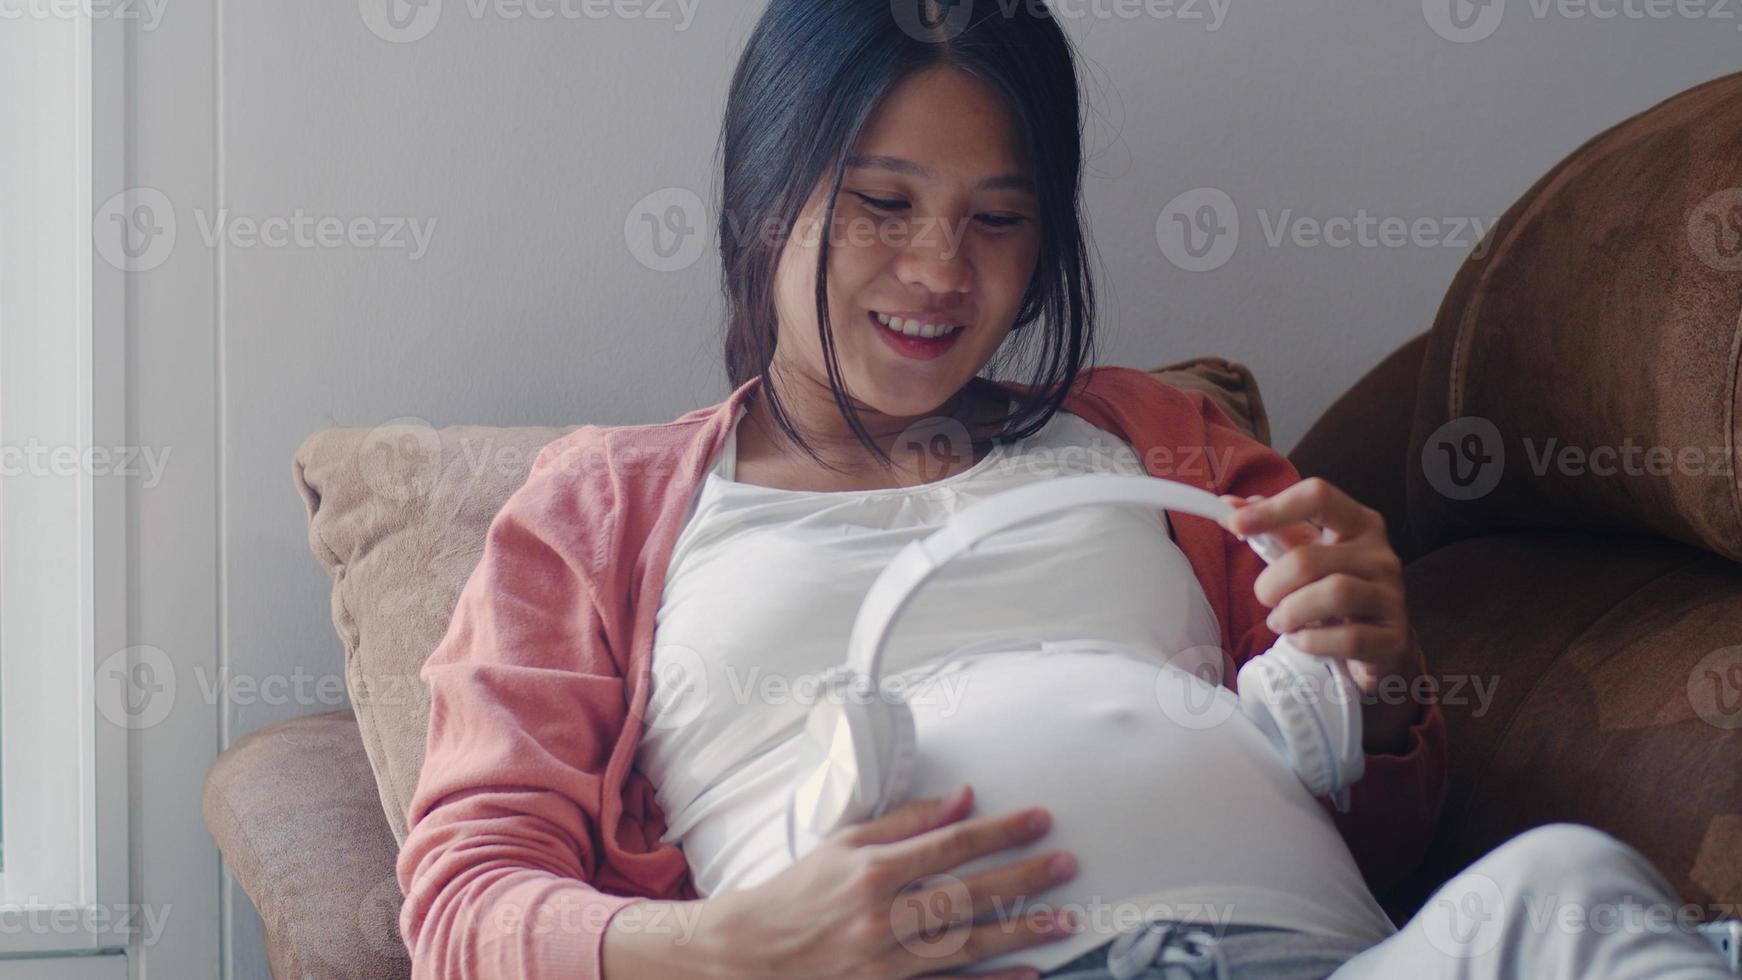 jonge aziatische zwangere vrouw die telefoon en hoofdtelefoon gebruikt, speelt muziek voor baby in buik. moeder voelt zich gelukkig glimlachend positief en vredig terwijl zorgzaam kind op de bank ligt in de woonkamer thuis concept. foto